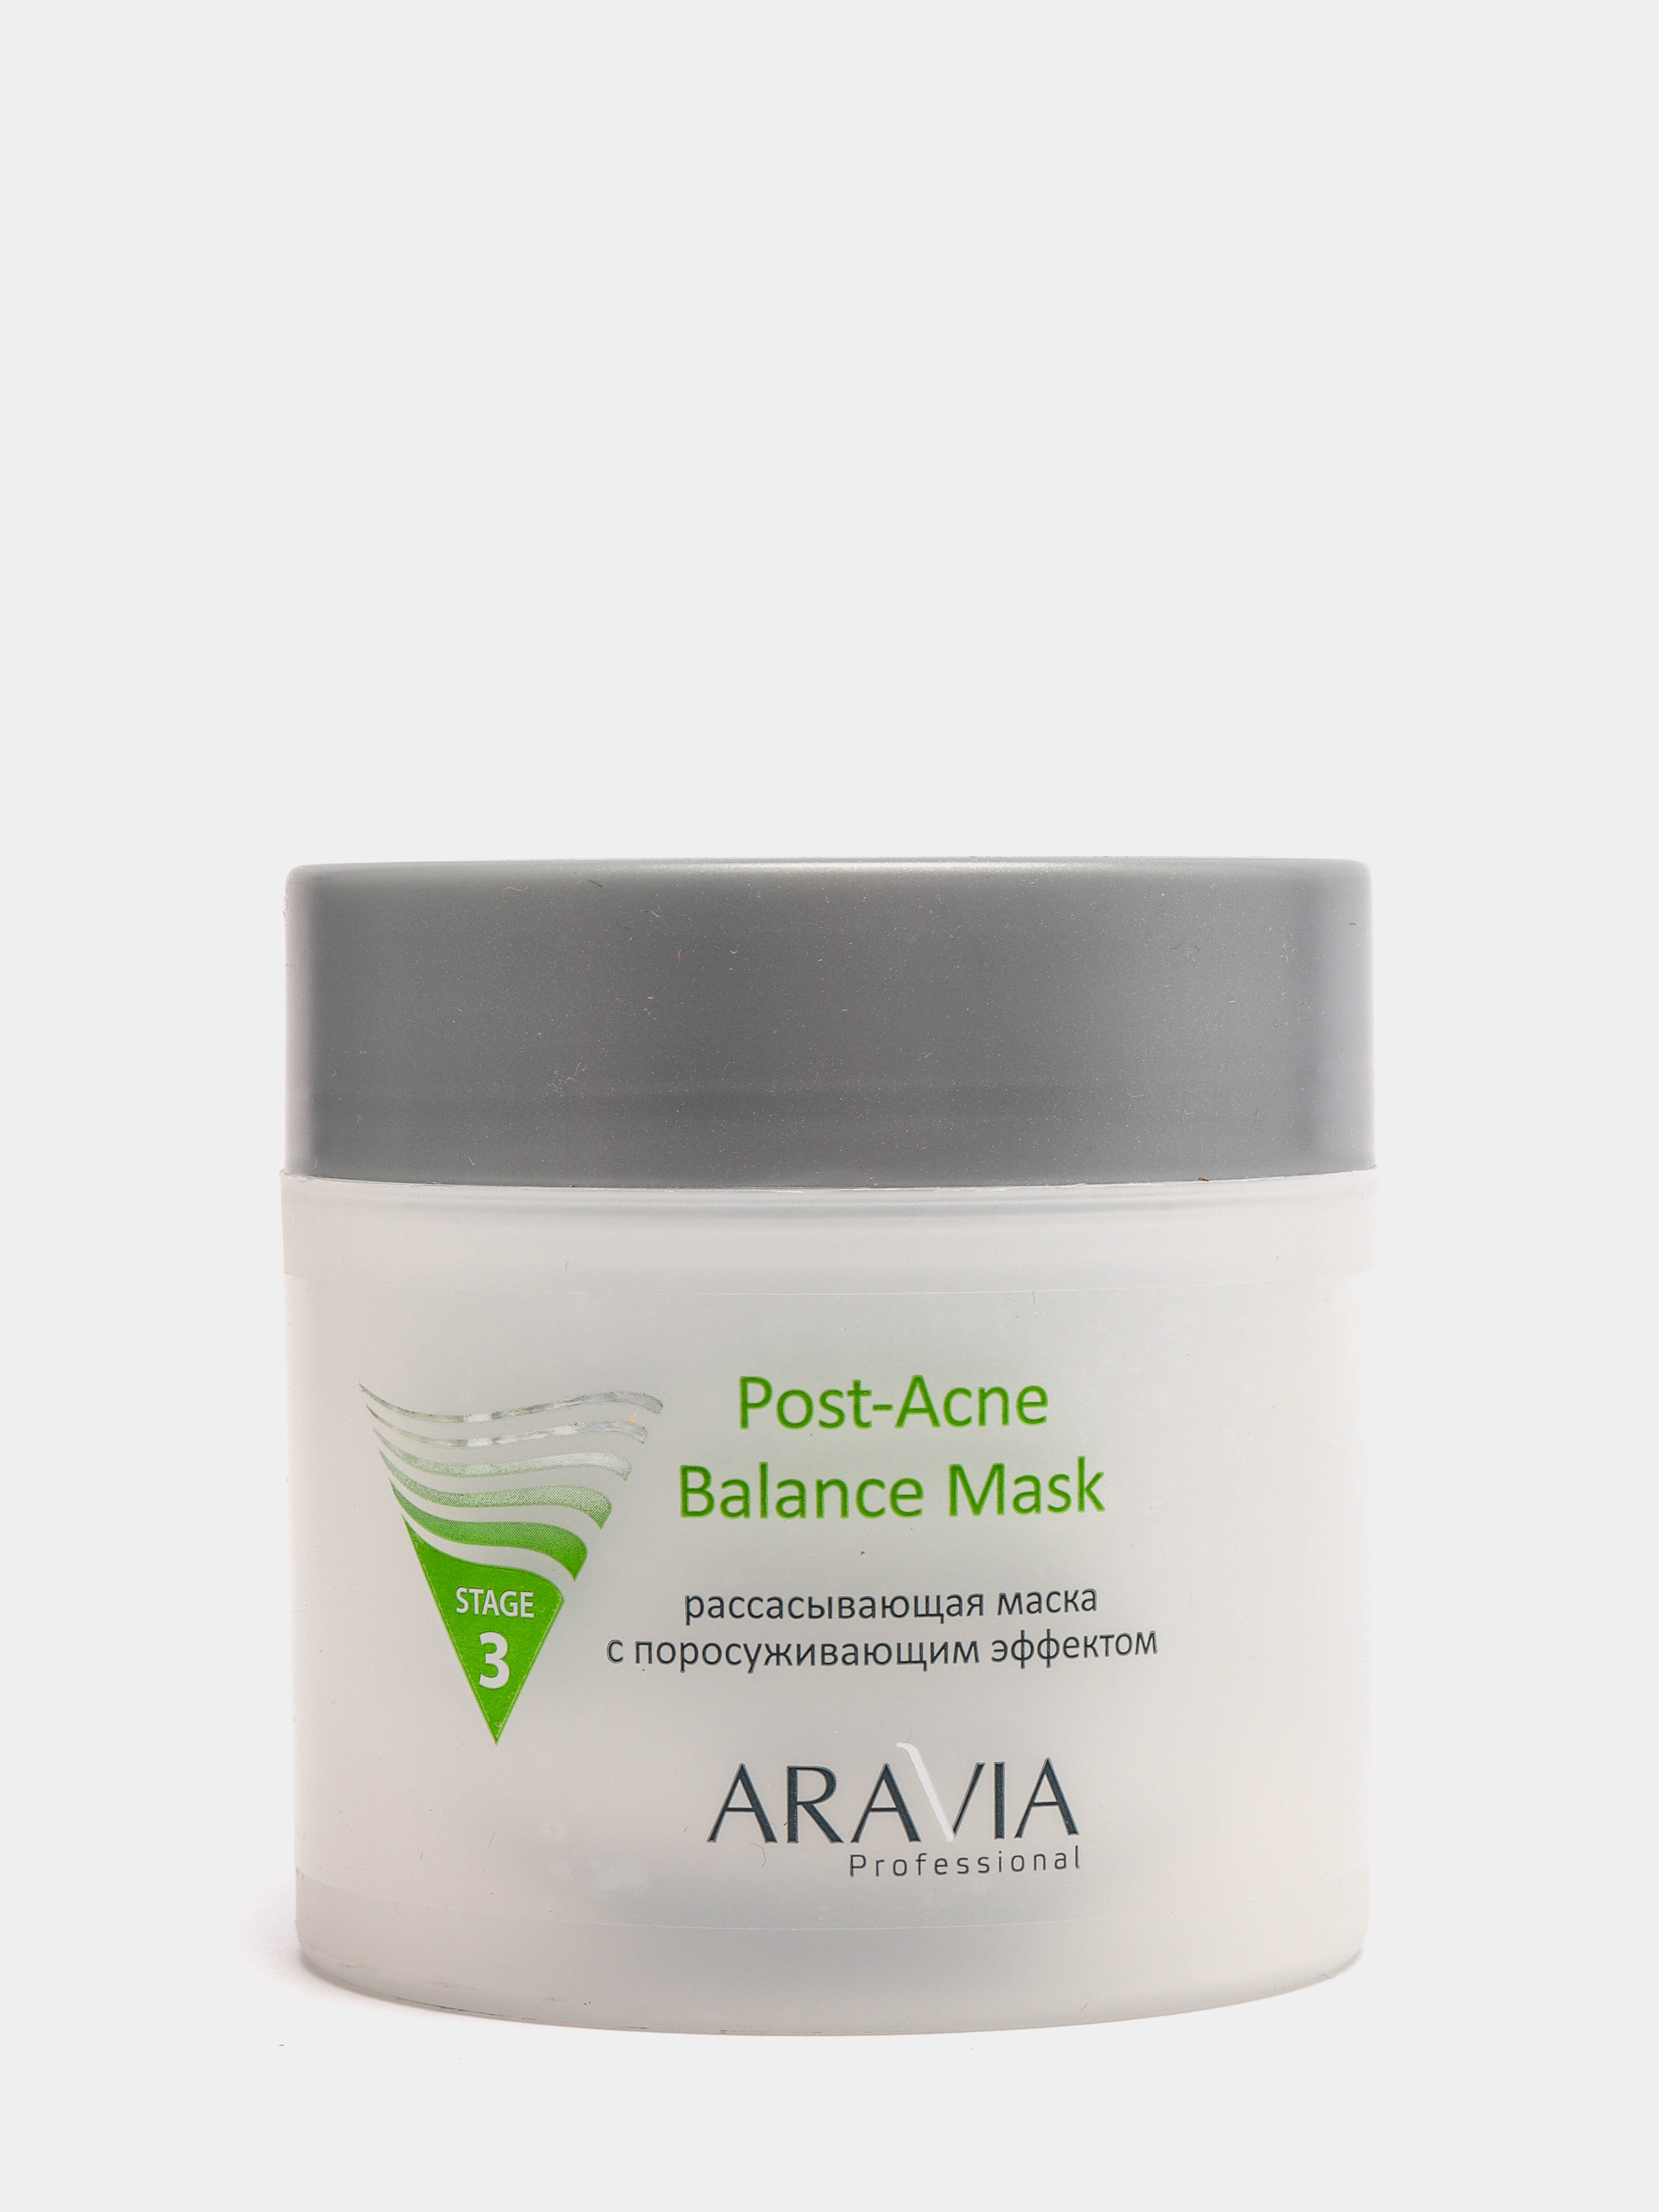 Аравия маска поросуживающая. Aravia Post acne Balance Mask. Аравия рассасывающая маска с поросуживающим эффектом. Post acne маска. Маска для лица с ментолом Аравия.